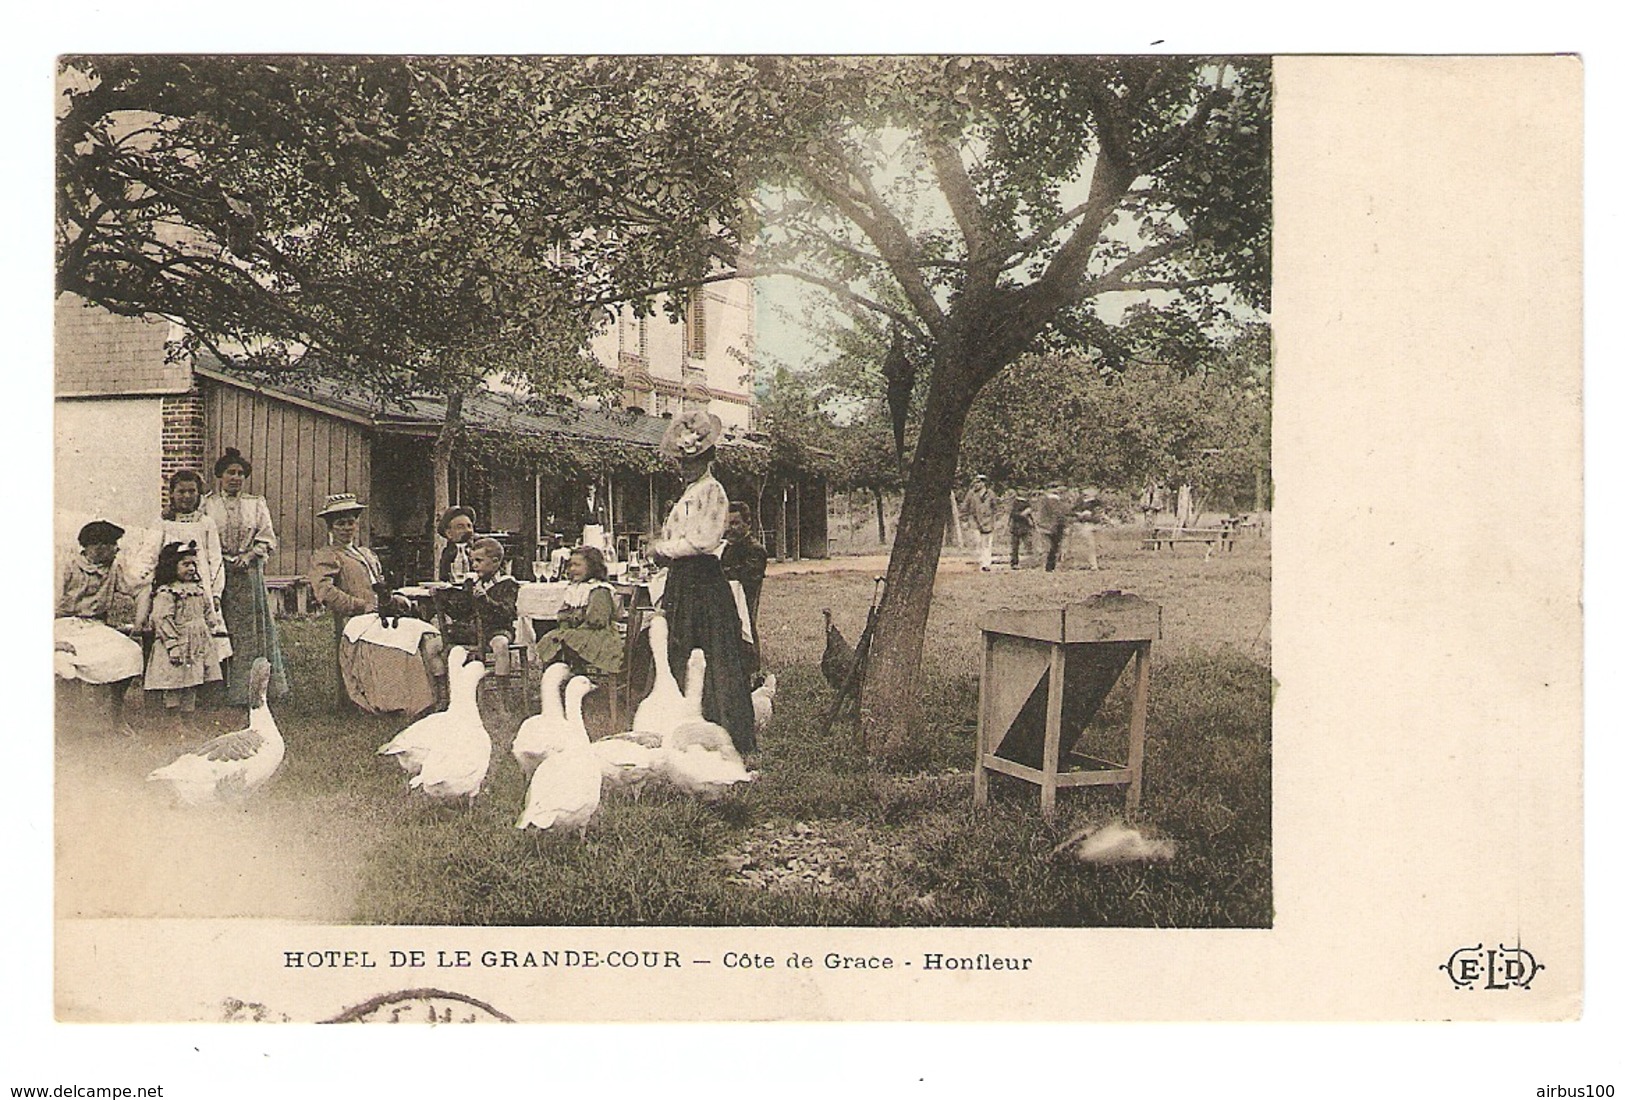 14 - HONFLEUR HOTEL De La GRANDE COUR - EDITIONS ELD - 1910 - OIE BASSE COUR - BELLE ANIMATION - Honfleur